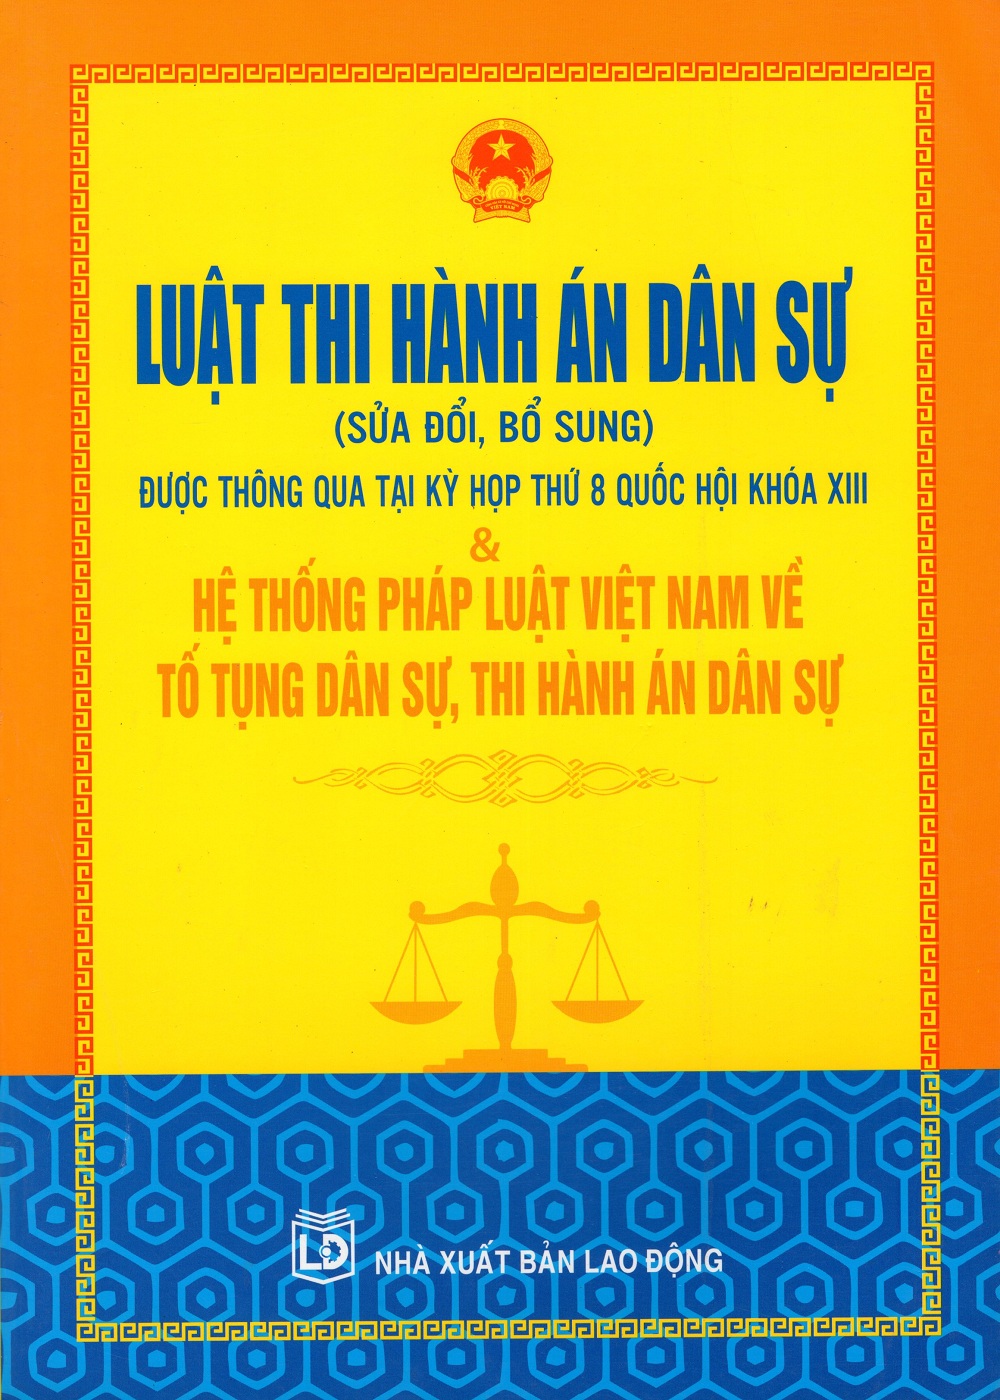 Luật Thi Hành Án Dân Sự (Sửa Đổi Bổ Sung) &amp; Hệ Thống Pháp Luật Việt Nam Về Tố Tụng Dân Sự, Thi Hành Án Dân Sự